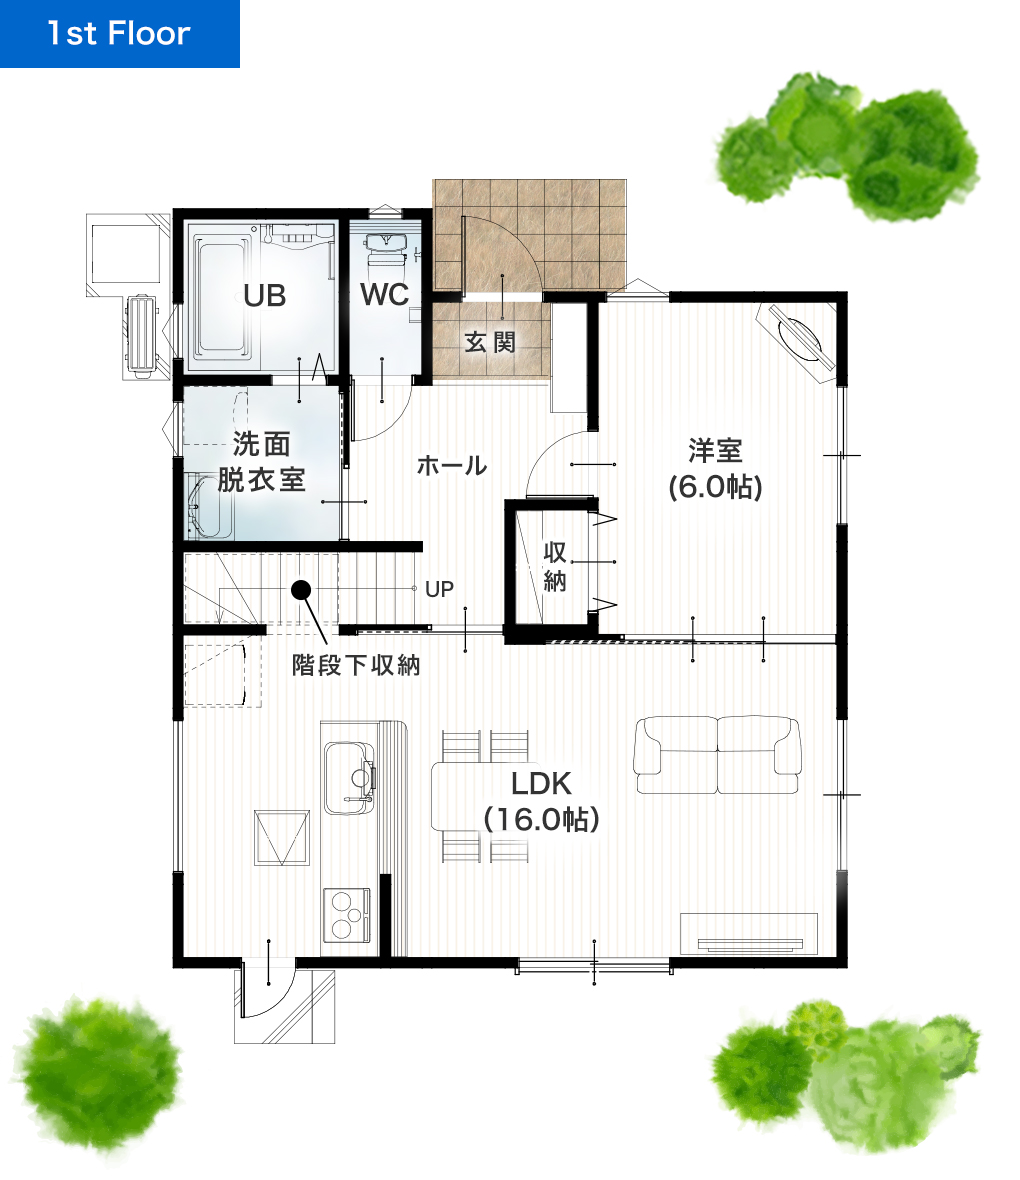 熊本市南区富合町清藤11号地 32坪 5LDK 建売・一戸建ての新築物件 1階間取り図